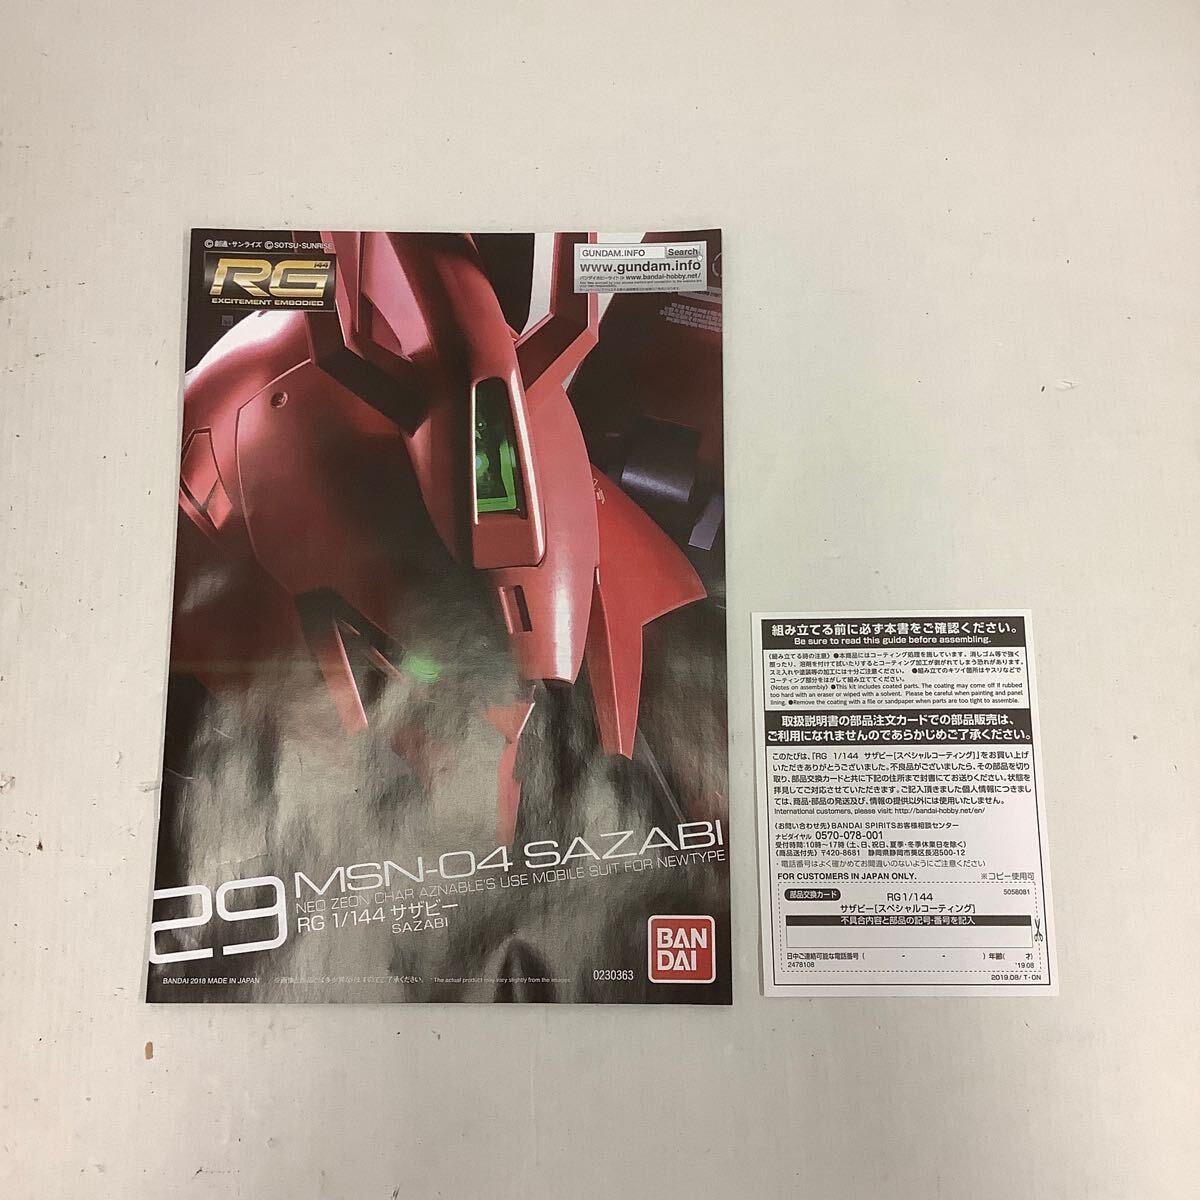 42 [BANDAI] Mobile Suit Gundam RG 1/144 Sazaby специальный покрытие пластиковая модель (100)